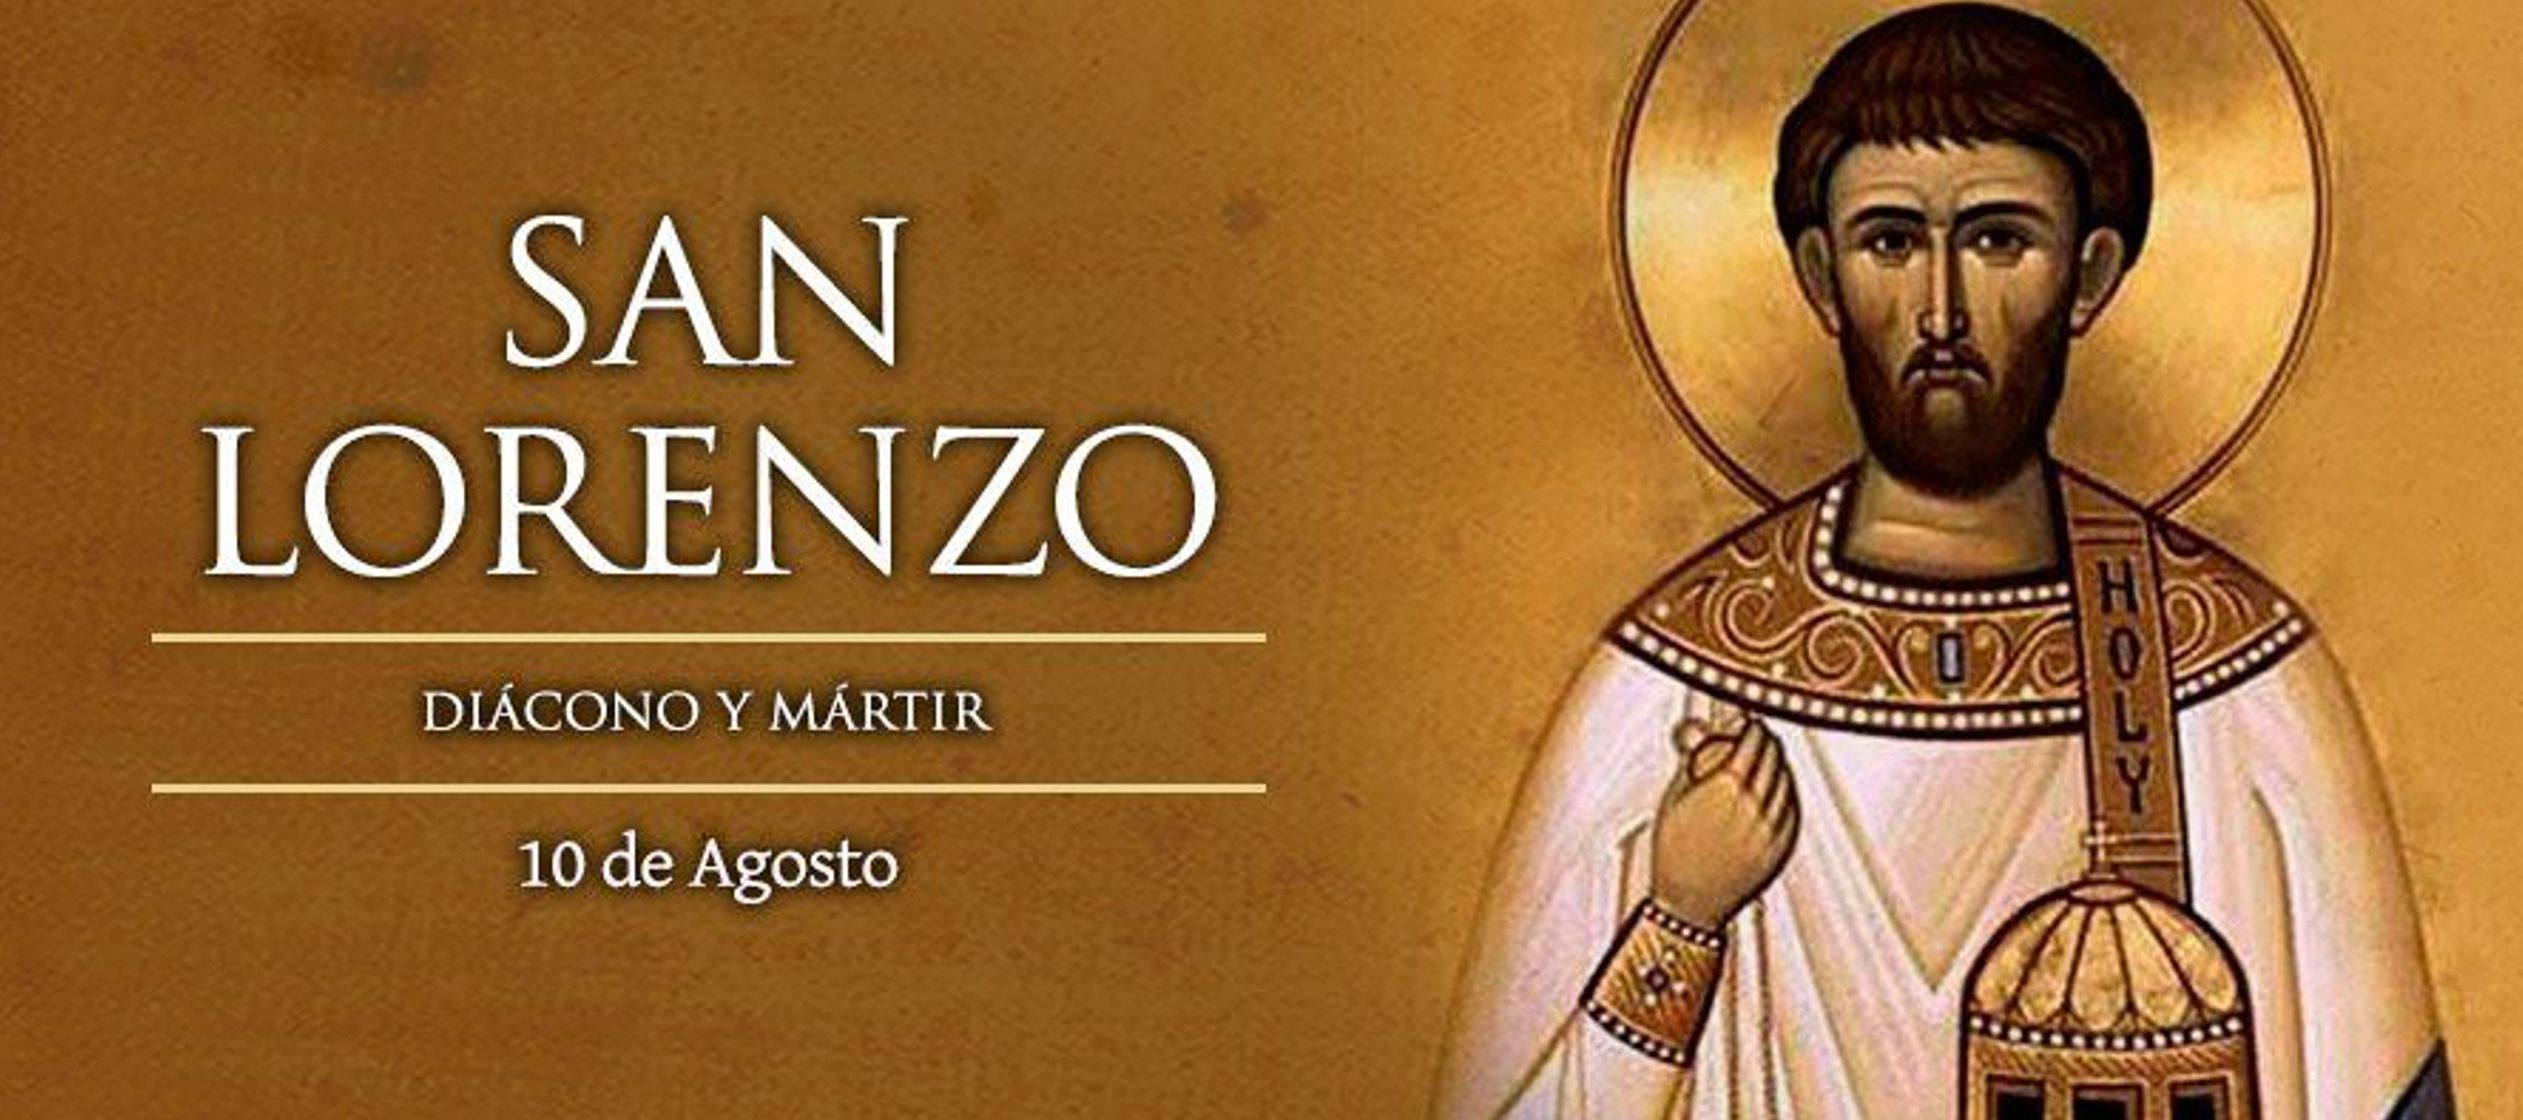 San Lorenzo (mártir), uno de los diáconos de la iglesia romana, fue una de las...